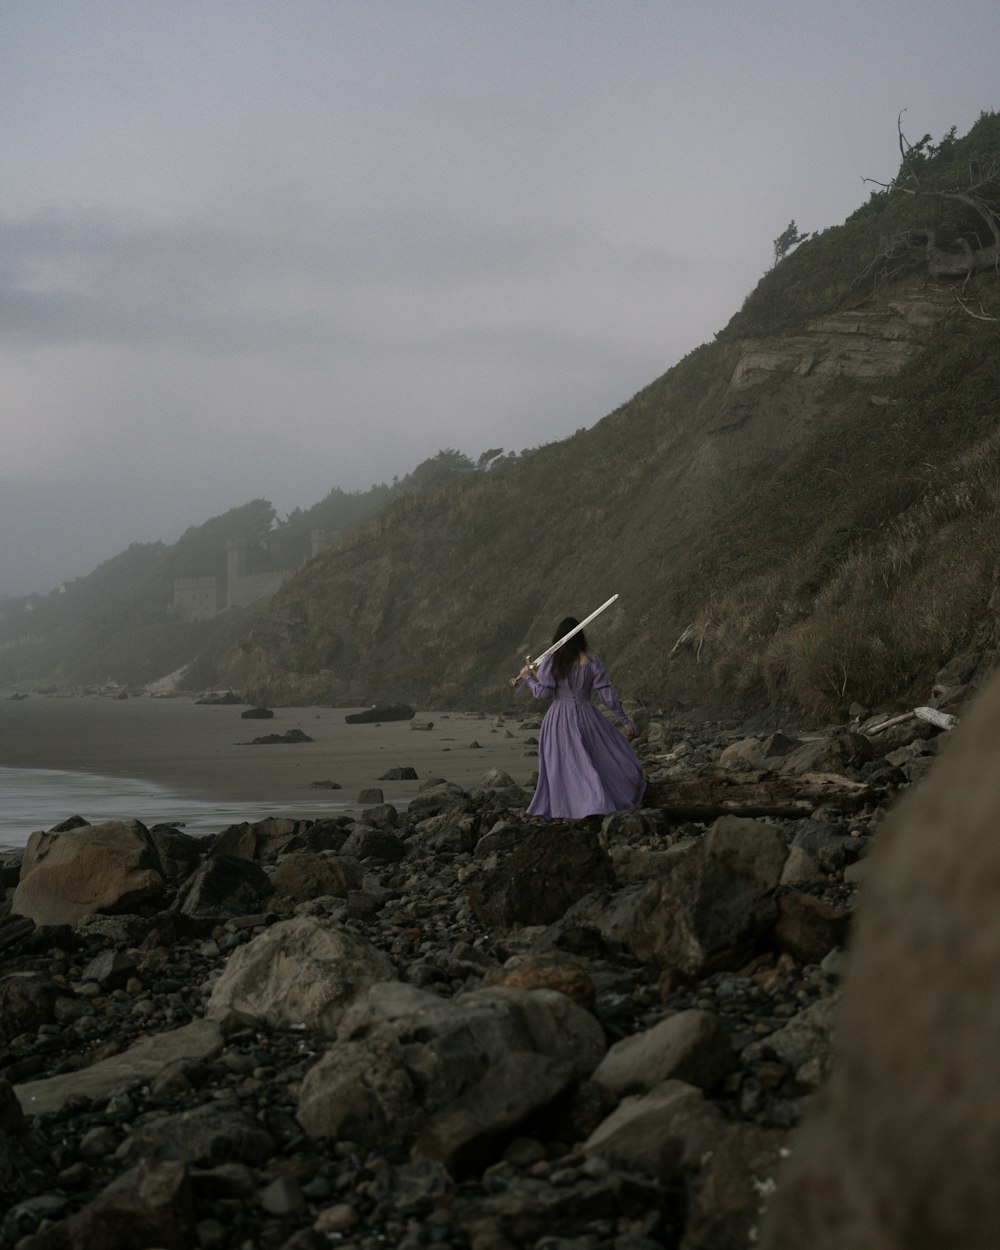 a woman in a purple dress is walking on a rocky beach